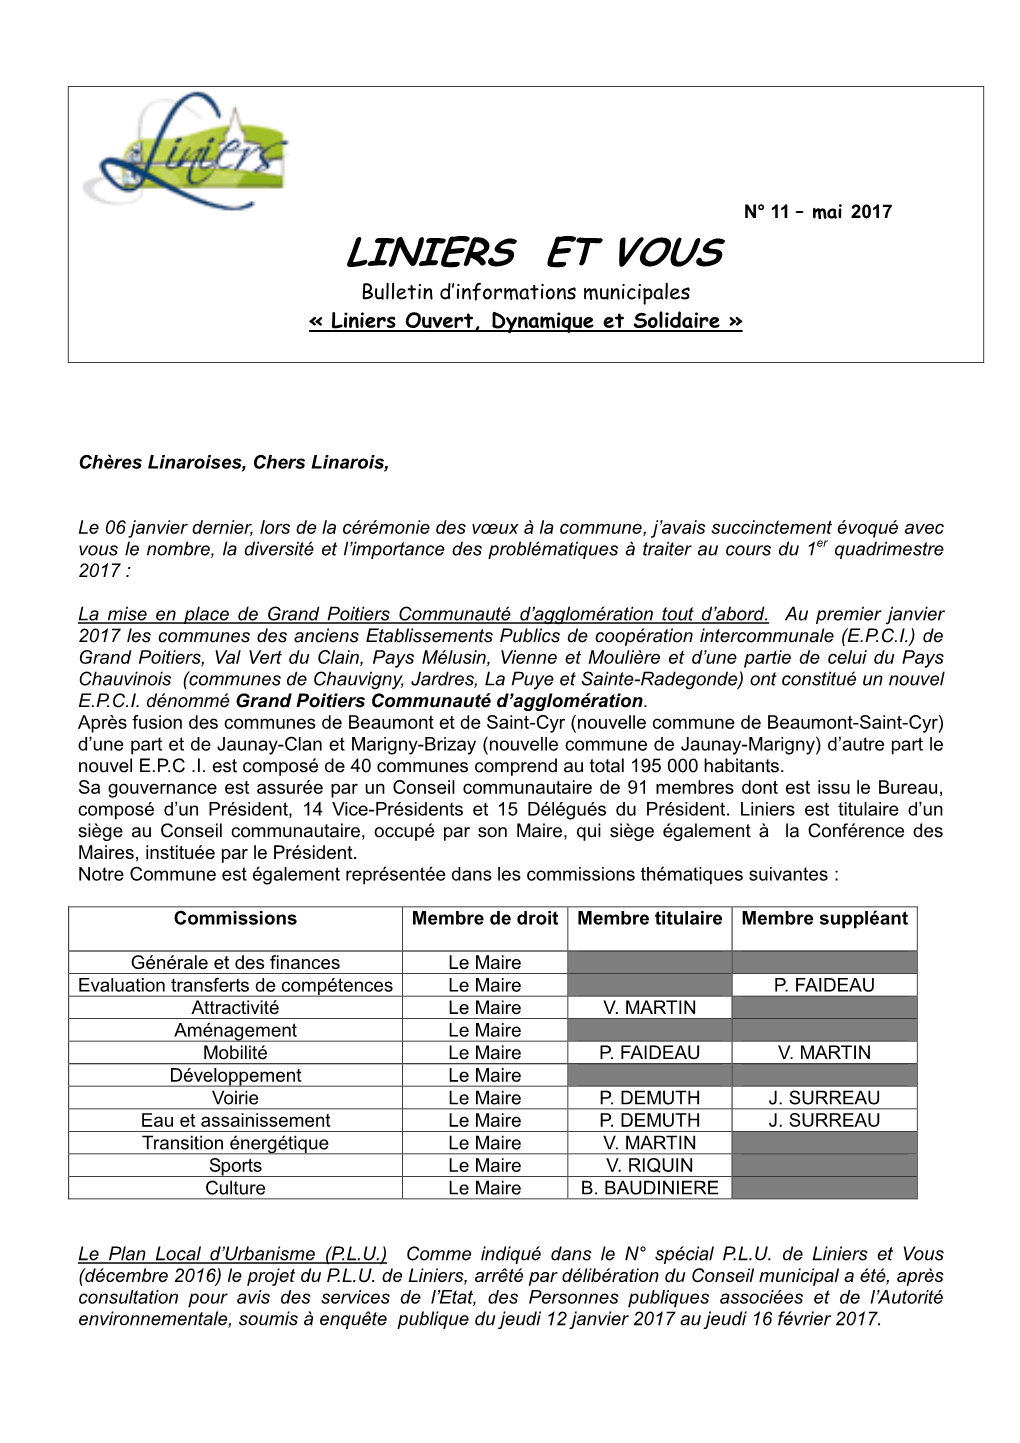 LINIERS ET VOUS Bulletin D’Informations Municipales « Liniers Ouvert, Dynamique Et Solidaire »